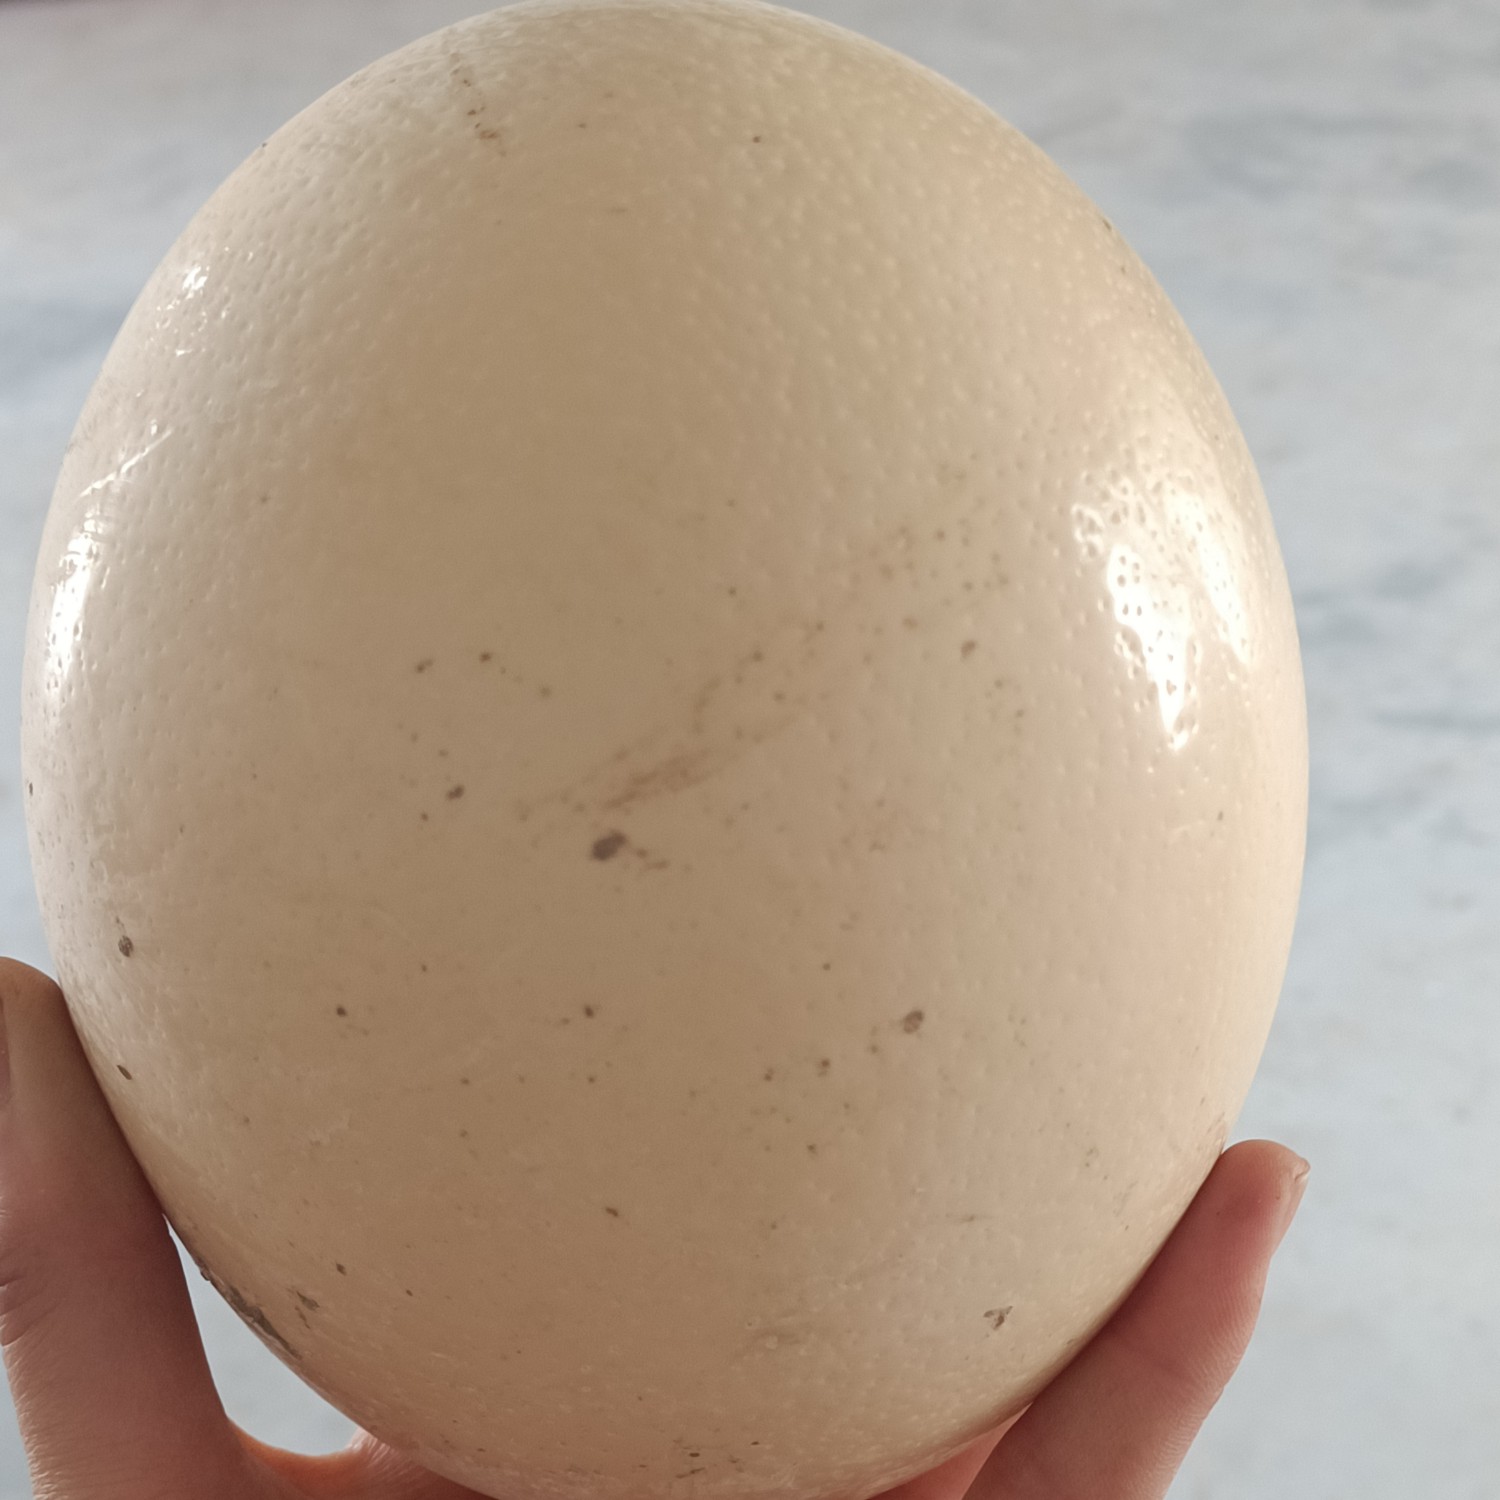 [鸵鸟蛋批发]非洲鸵鸟蛋,鸵鸟种蛋,一枚三斤多,营养价值高,价格120元